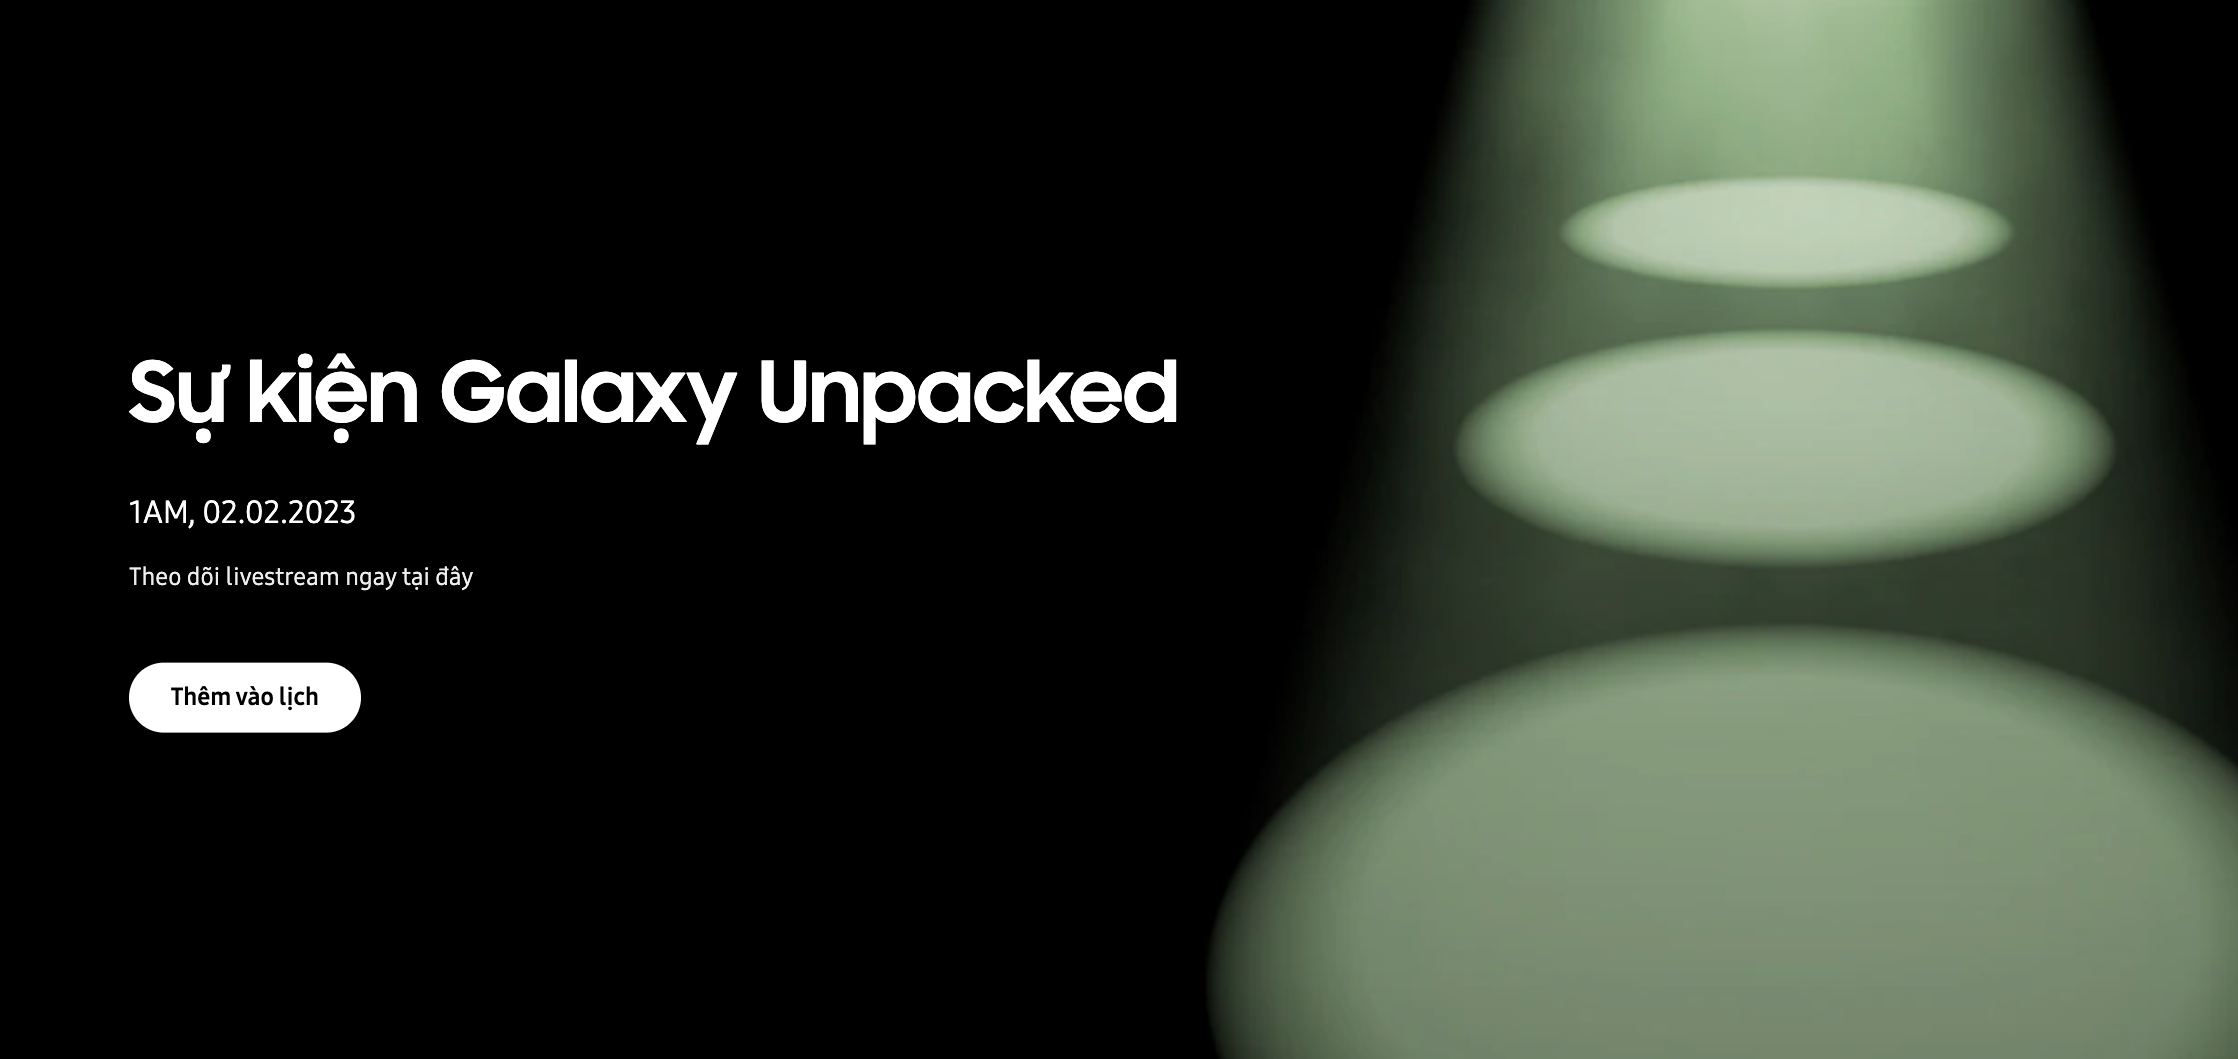 Đếm ngược trước giờ ra mắt thế hệ Galaxy S23 mới tại sự kiện Galaxy Unpacked 2023